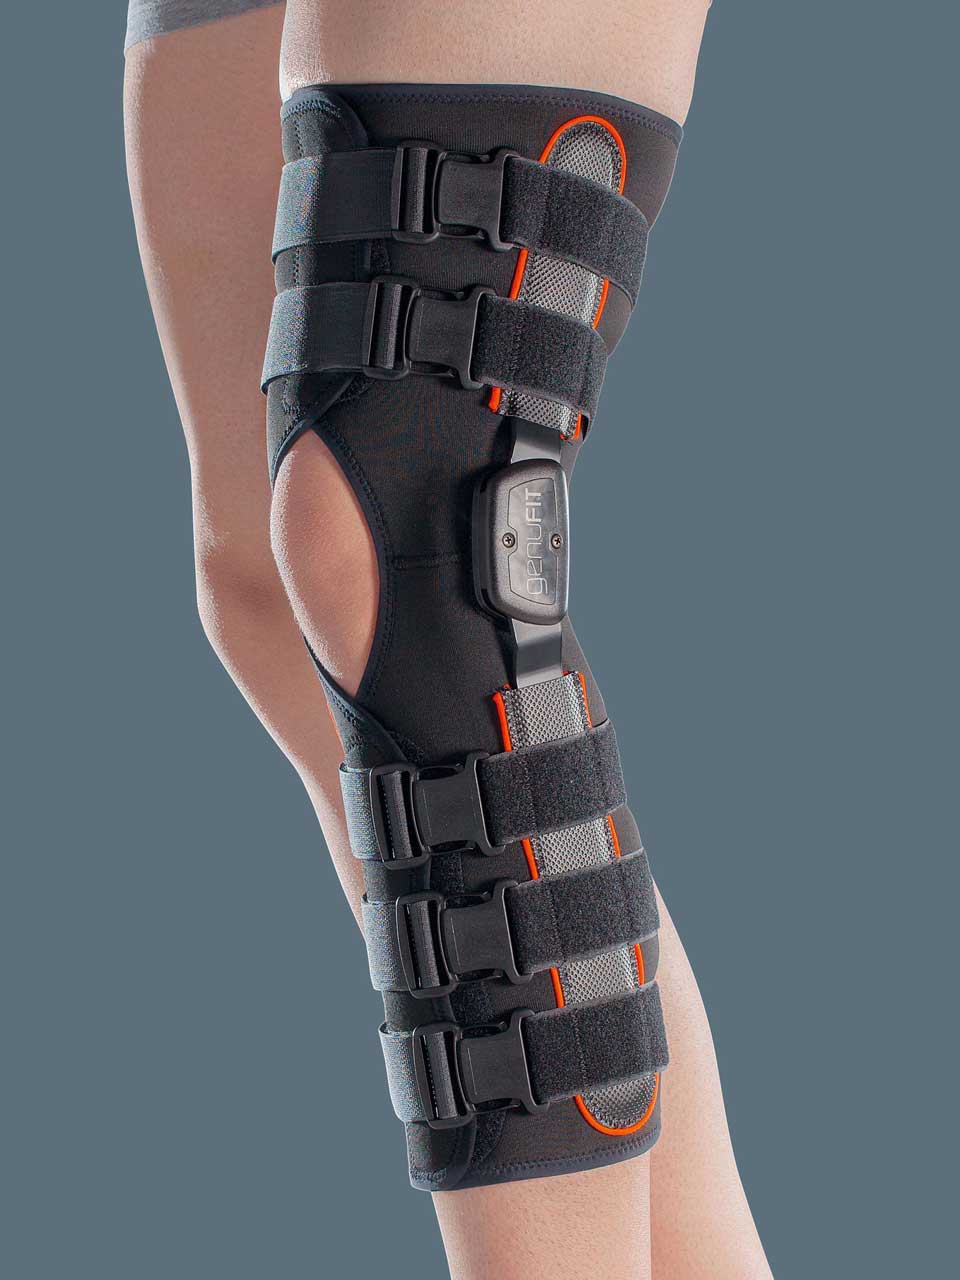 GENUFIT 50A - Knieorthese aus AirX™ Gewebe mit polyzentrischen Gelenkschienen zur Flexion/Extension-Einstellung, 50 cm lang, zum Öffnen